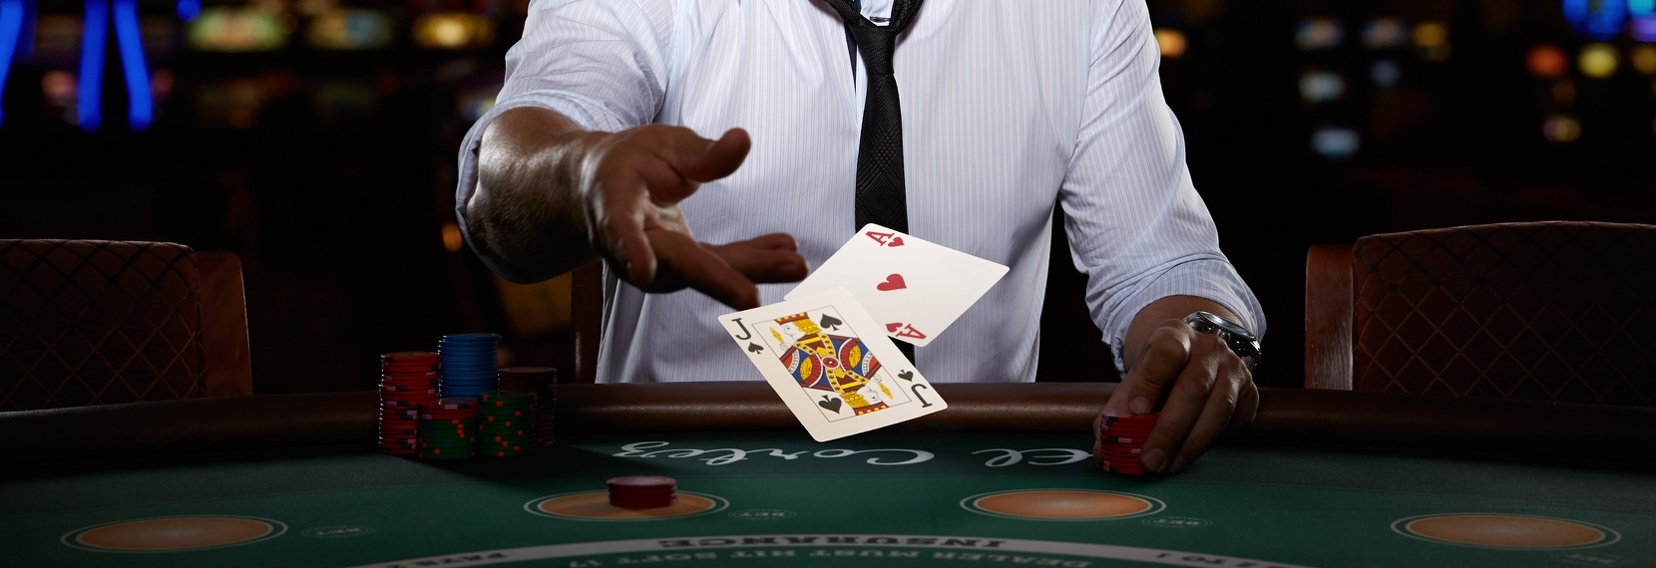 Особенности игры в покер онлайн